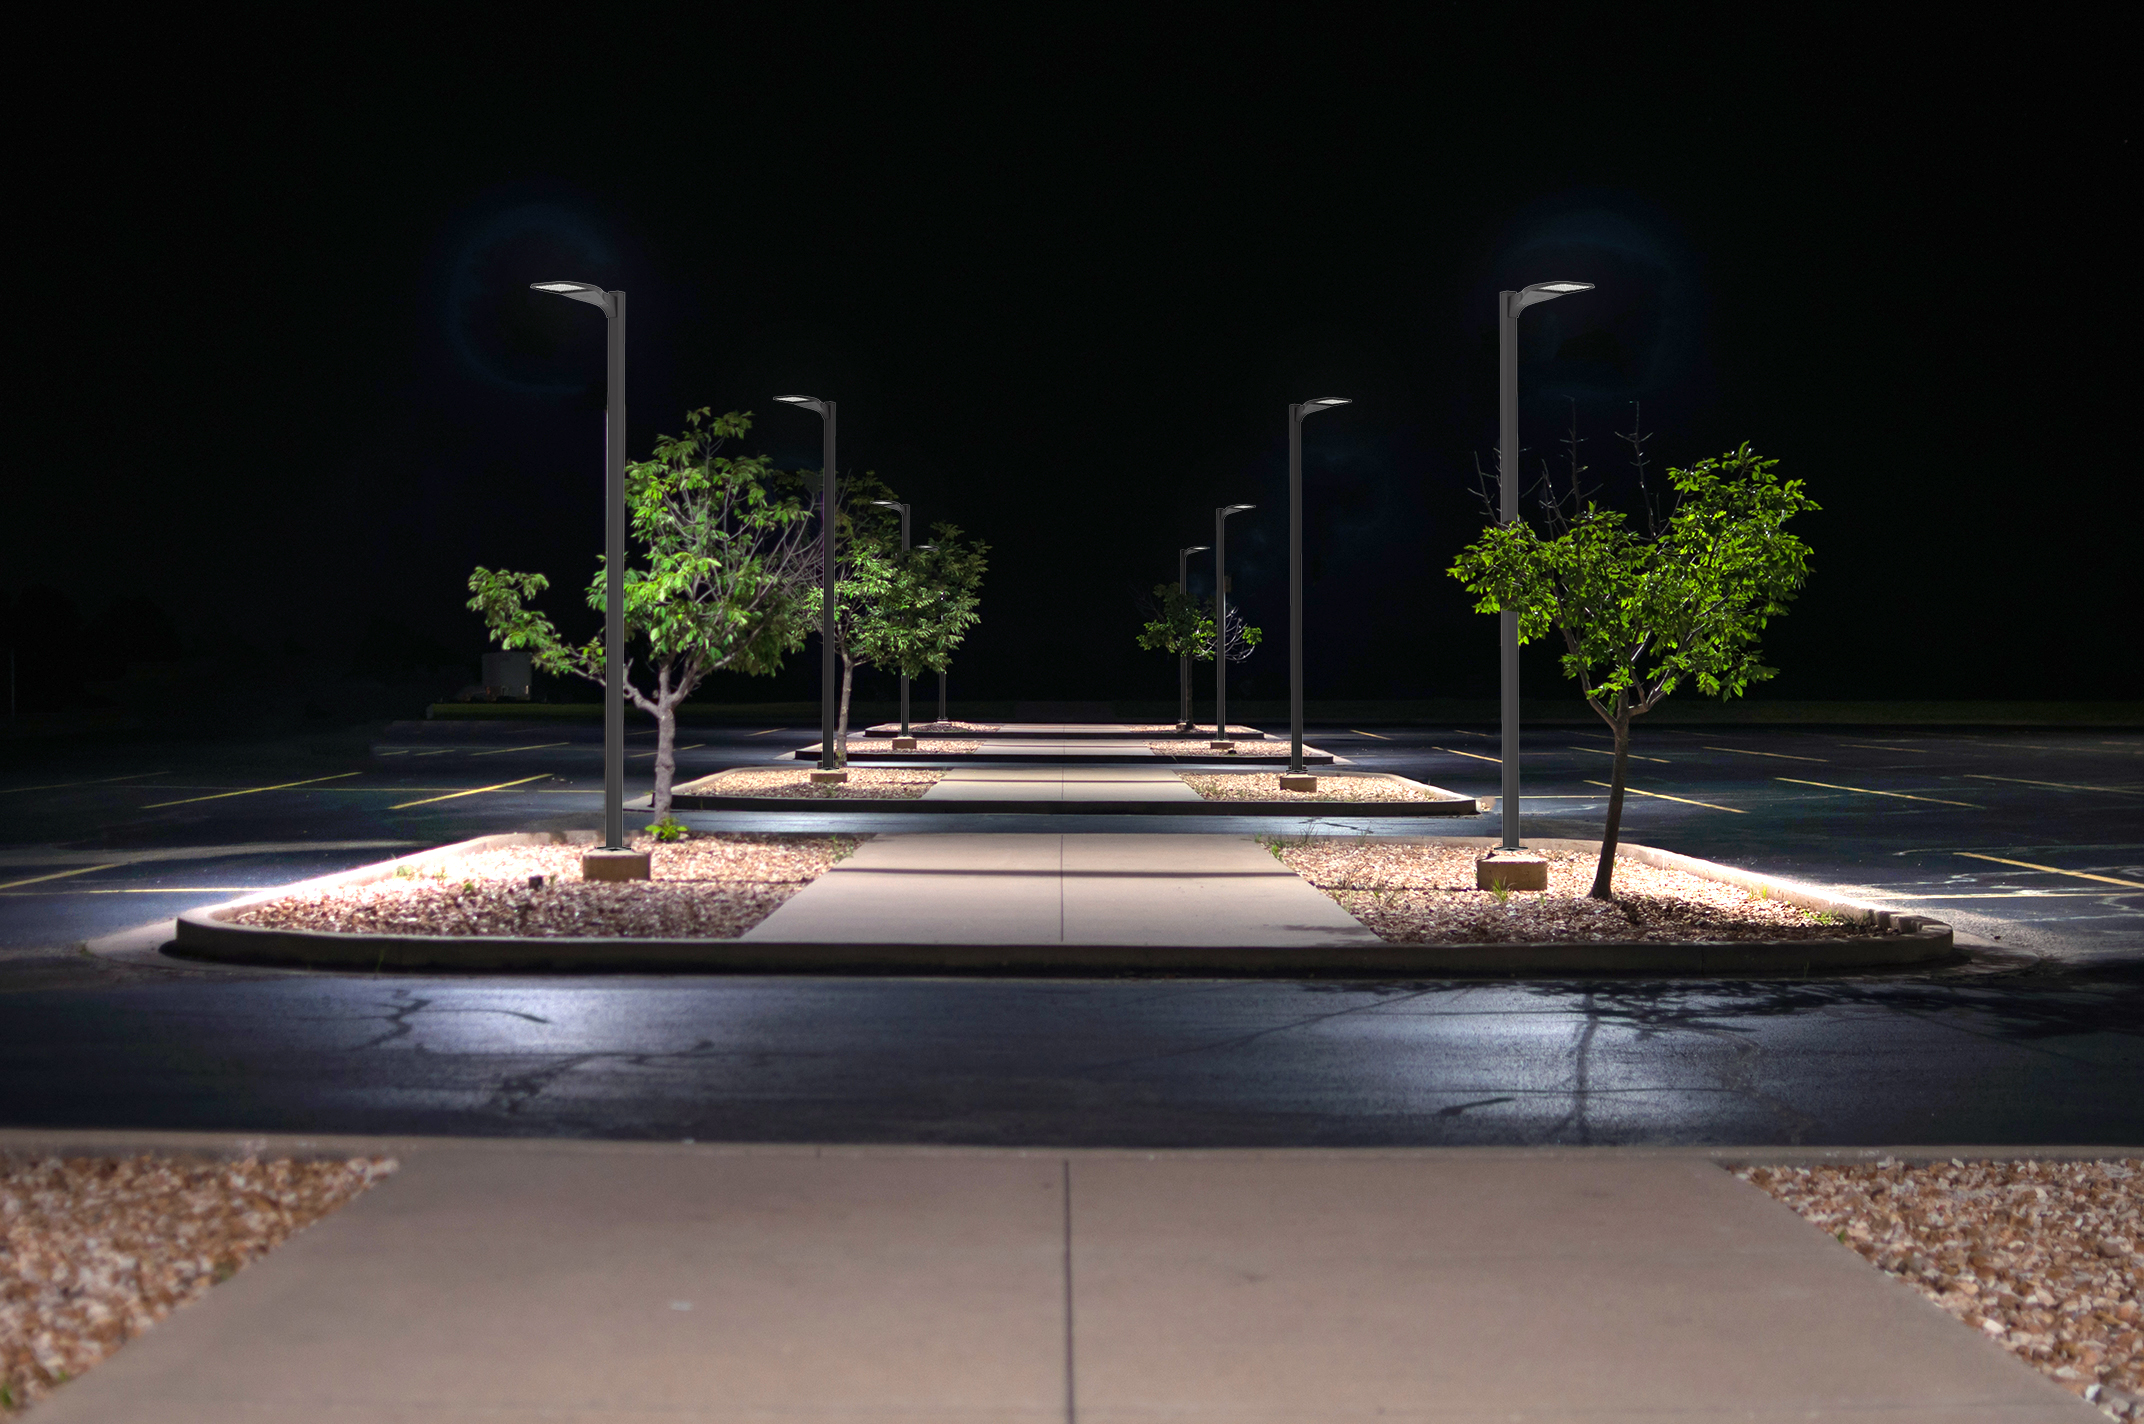 illuminated-parking-lot